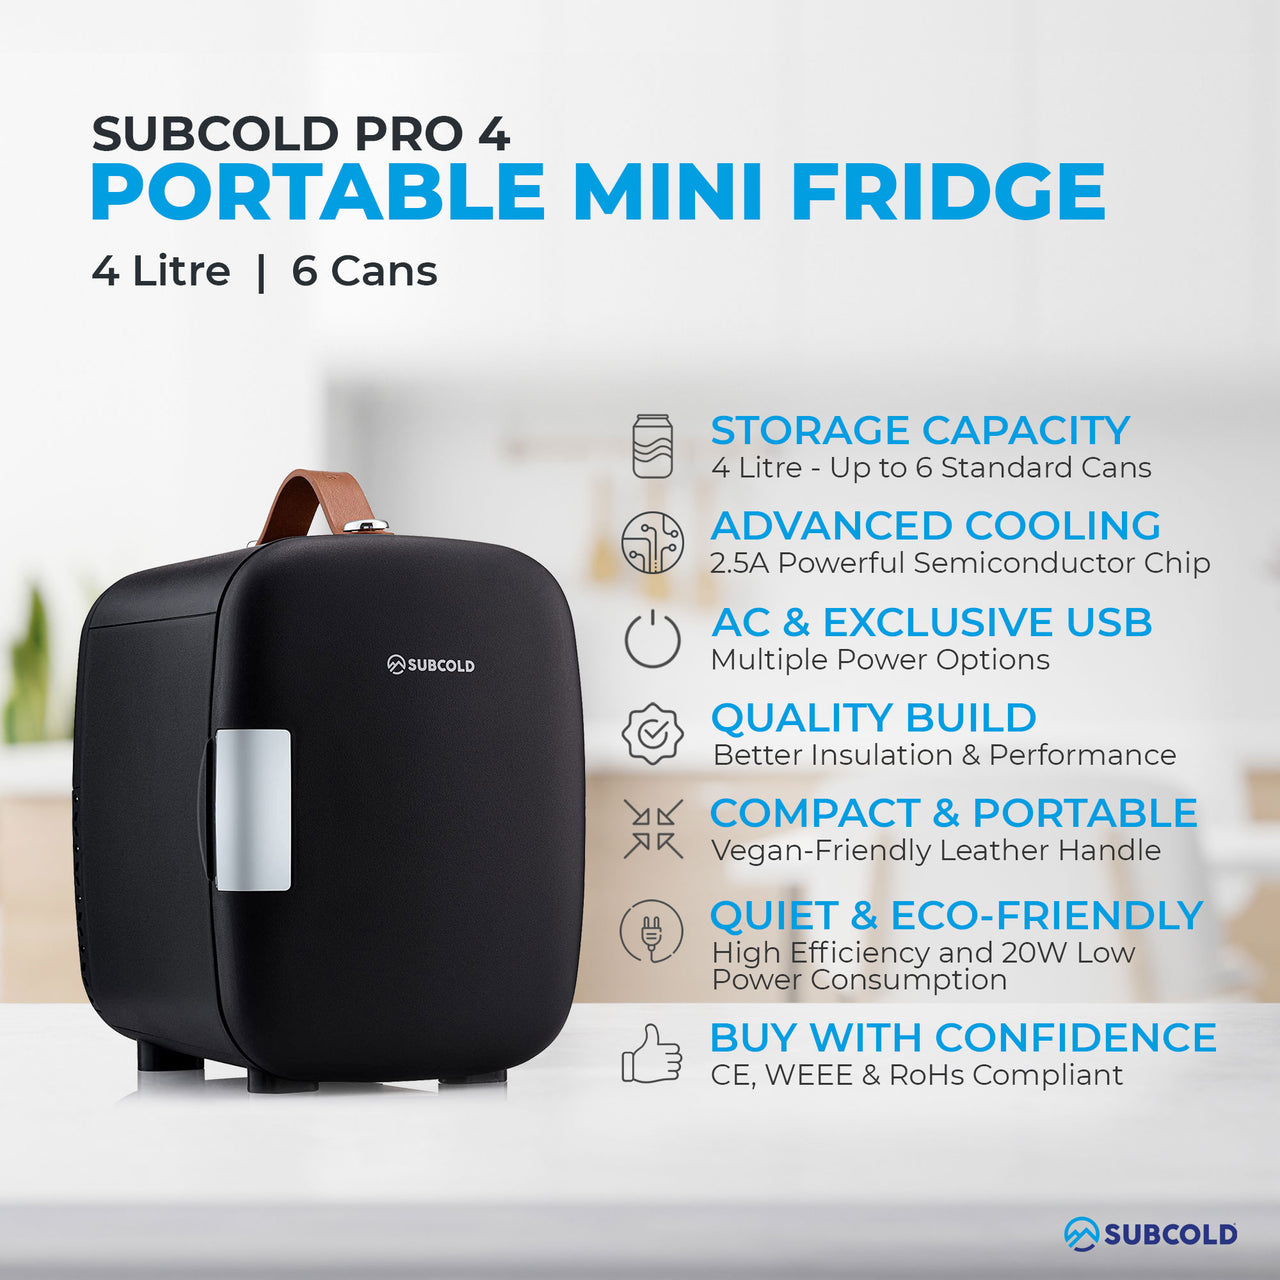 Subcold Pro 4 litre black mini fridge features infographic